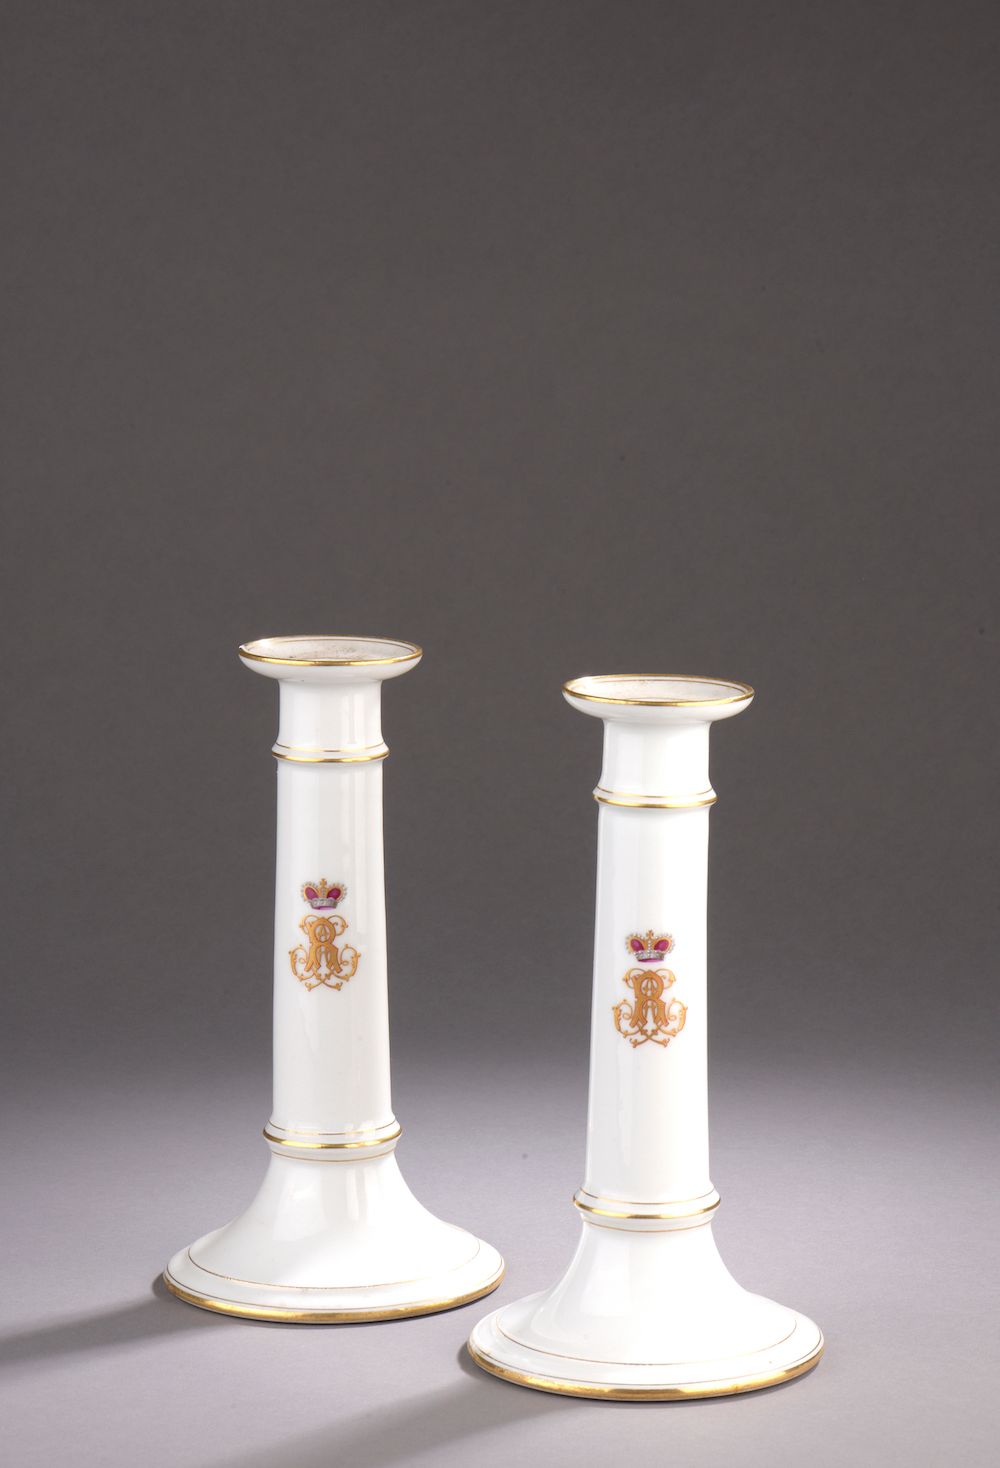 Null 白瓷火把一对，带金丝和冠状LR（小缺口）。

19世纪。

高度。高度：20厘米